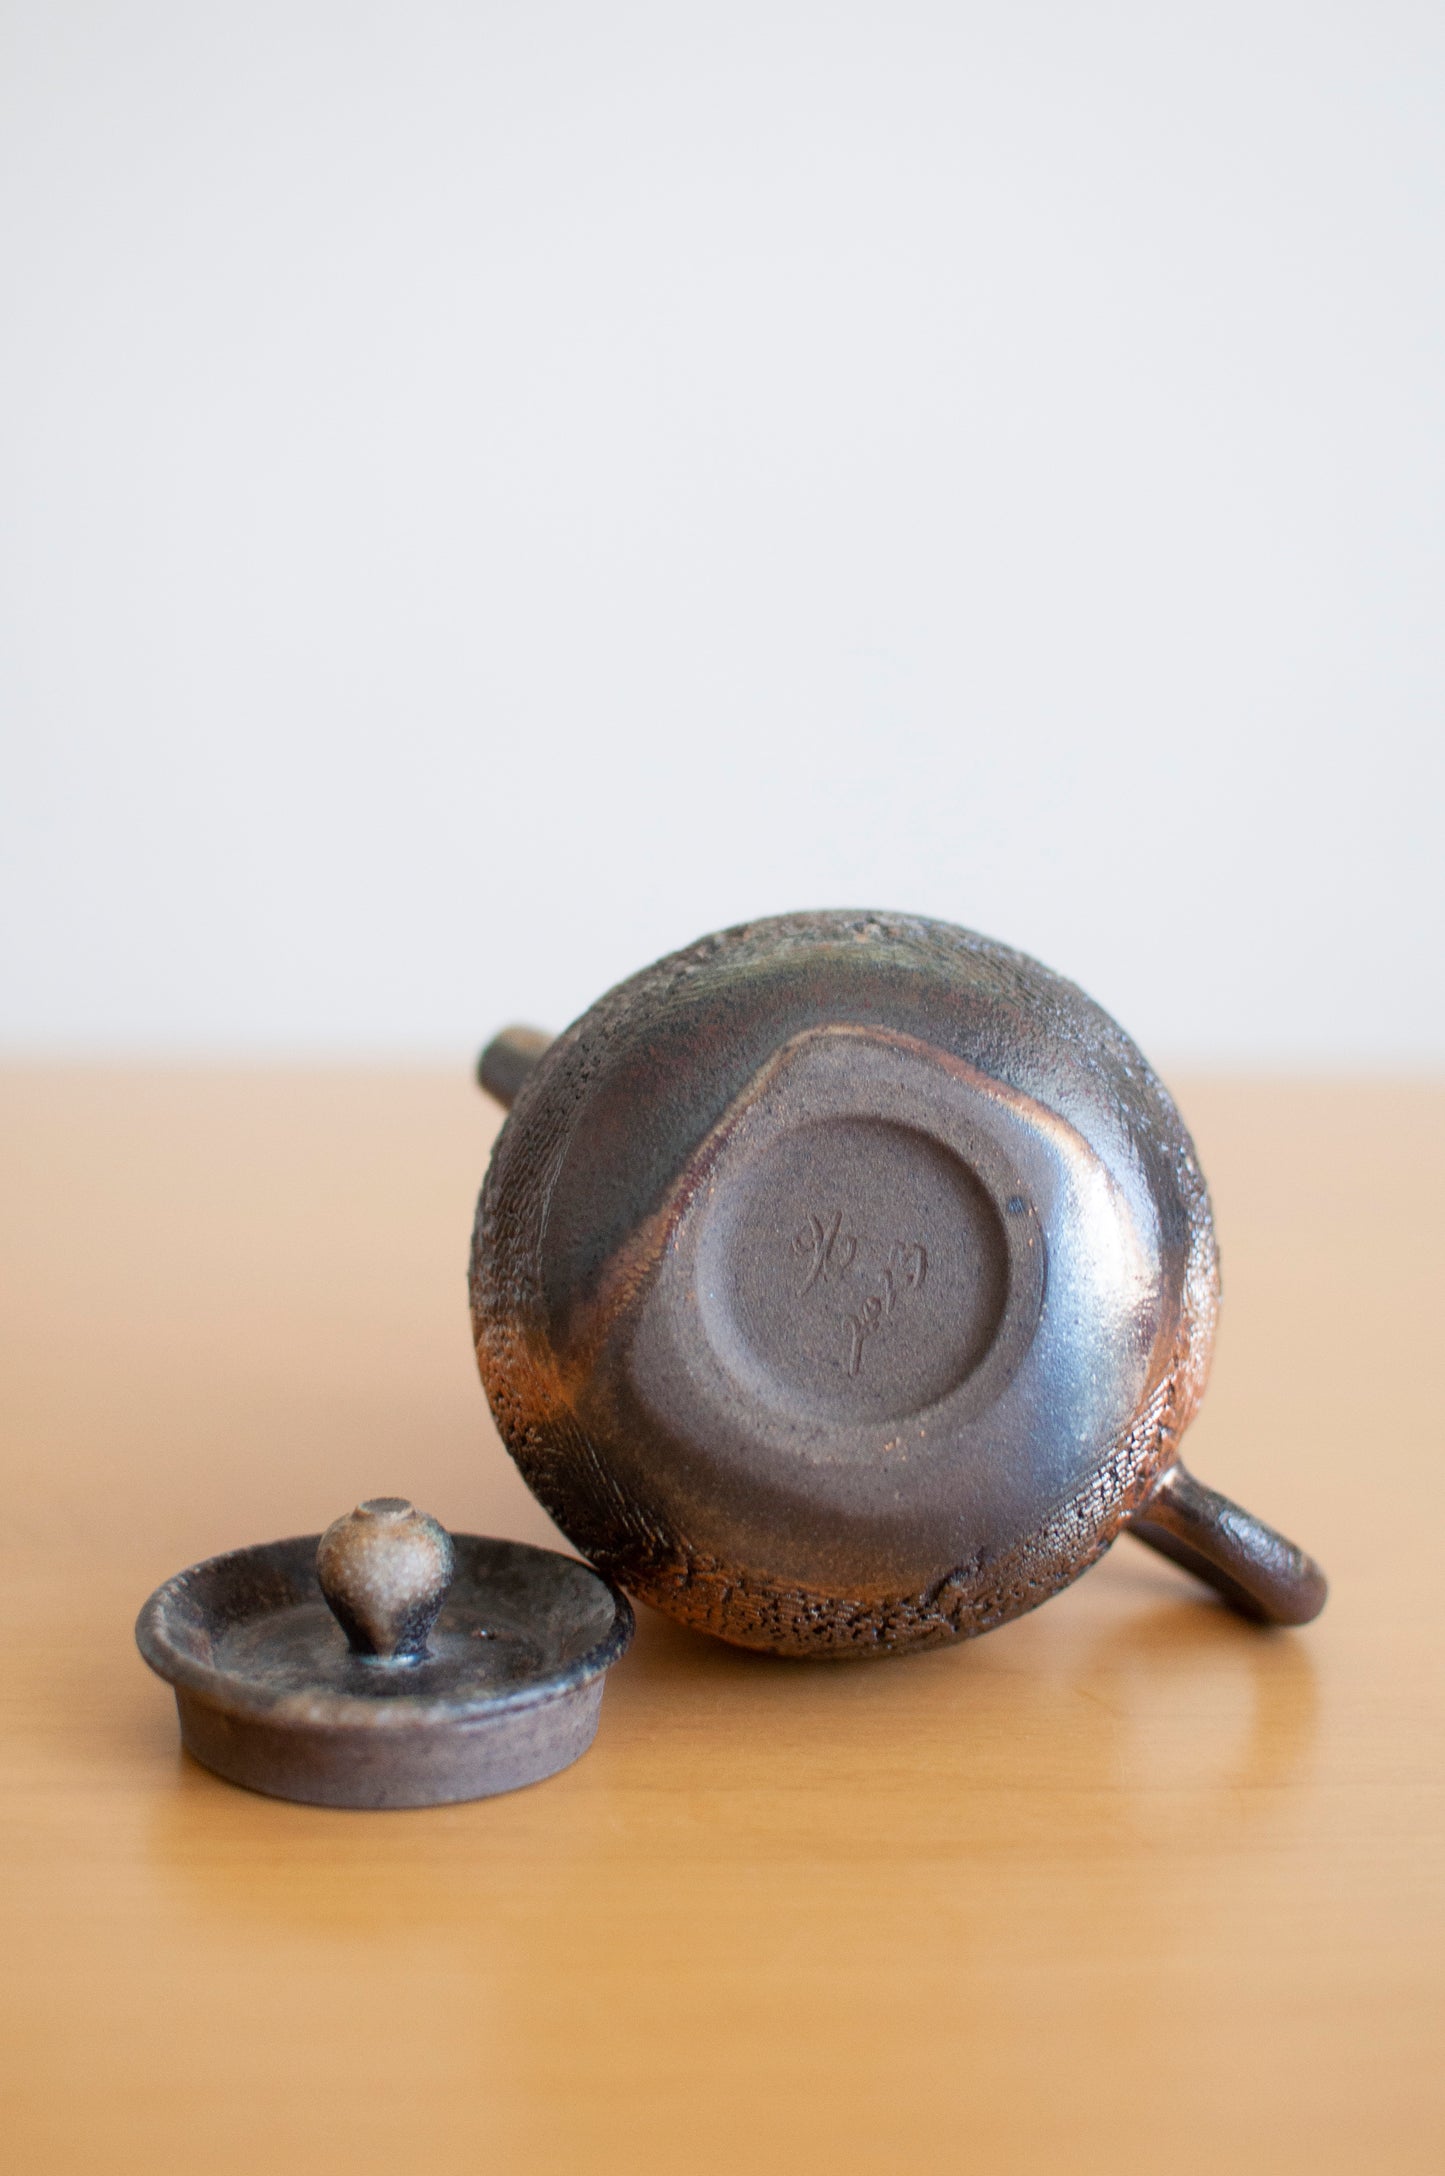 Taiwan wood-fired teapot